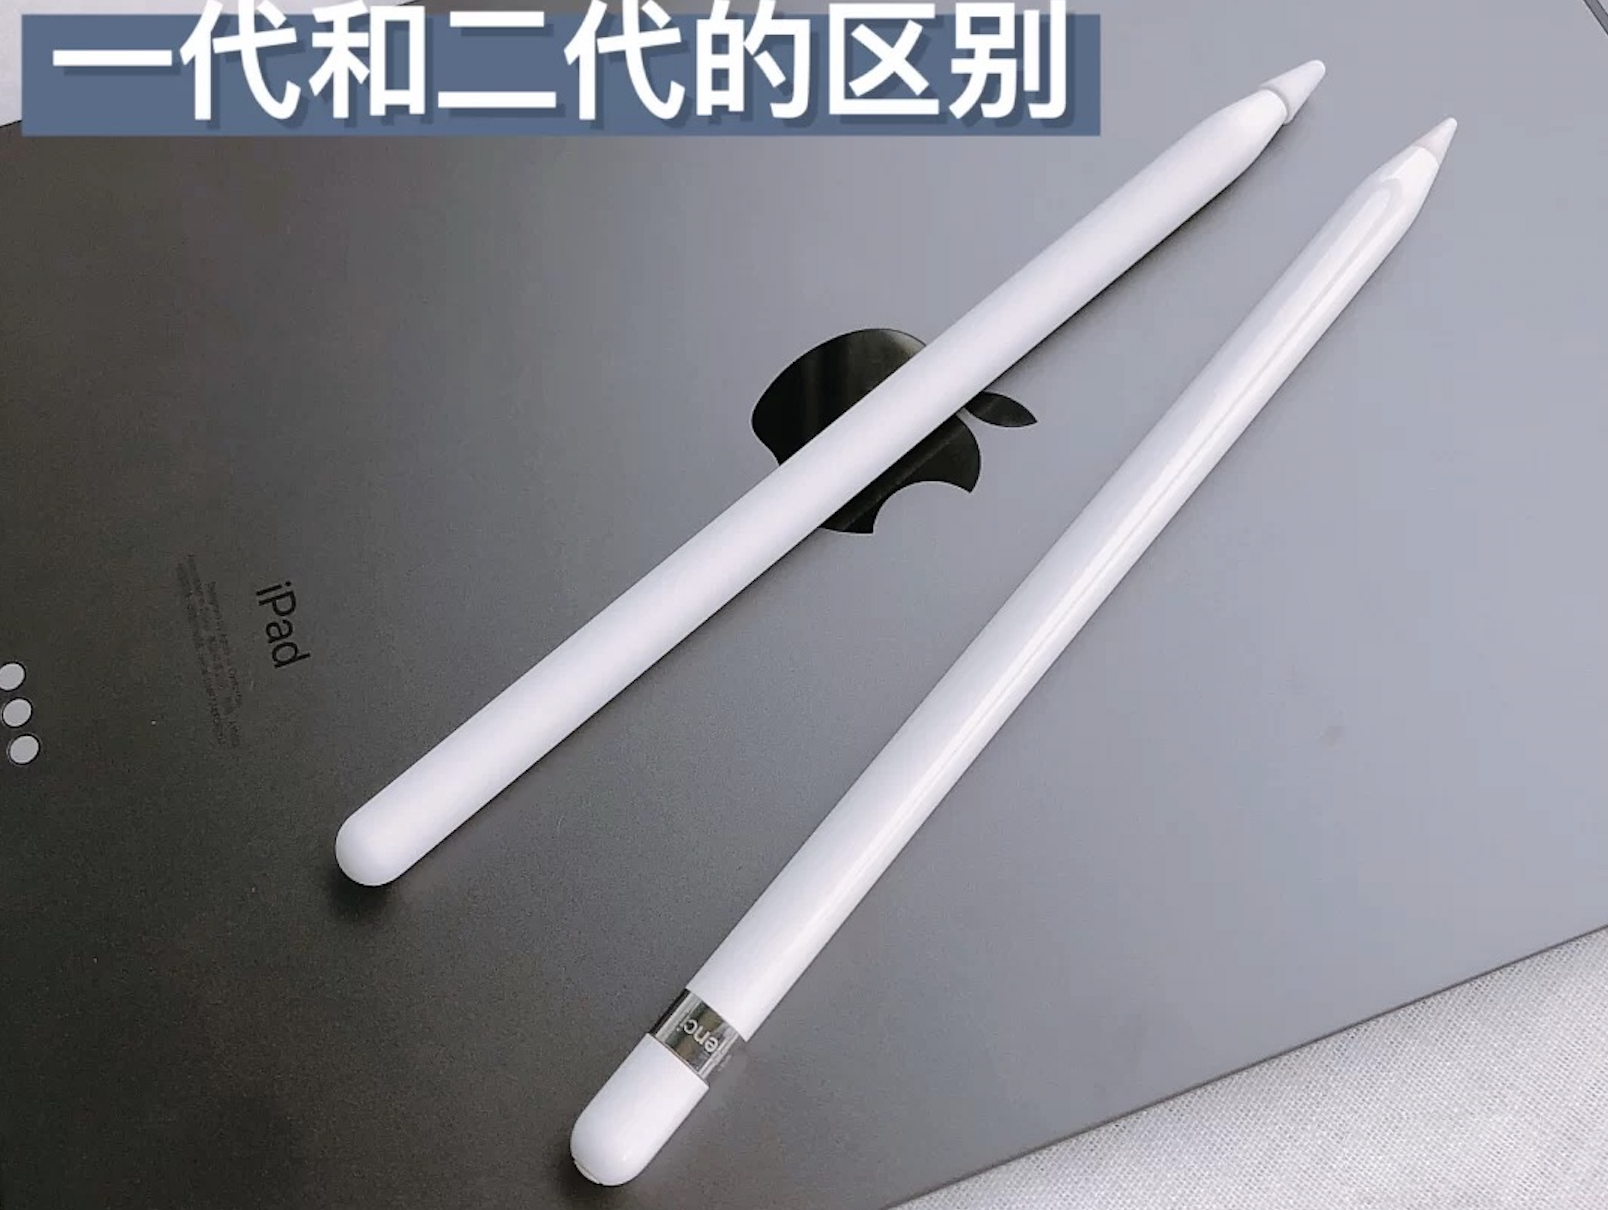 2022年618 ipad pencil推荐】pencil一代和二代的区别？ipad pencil618 